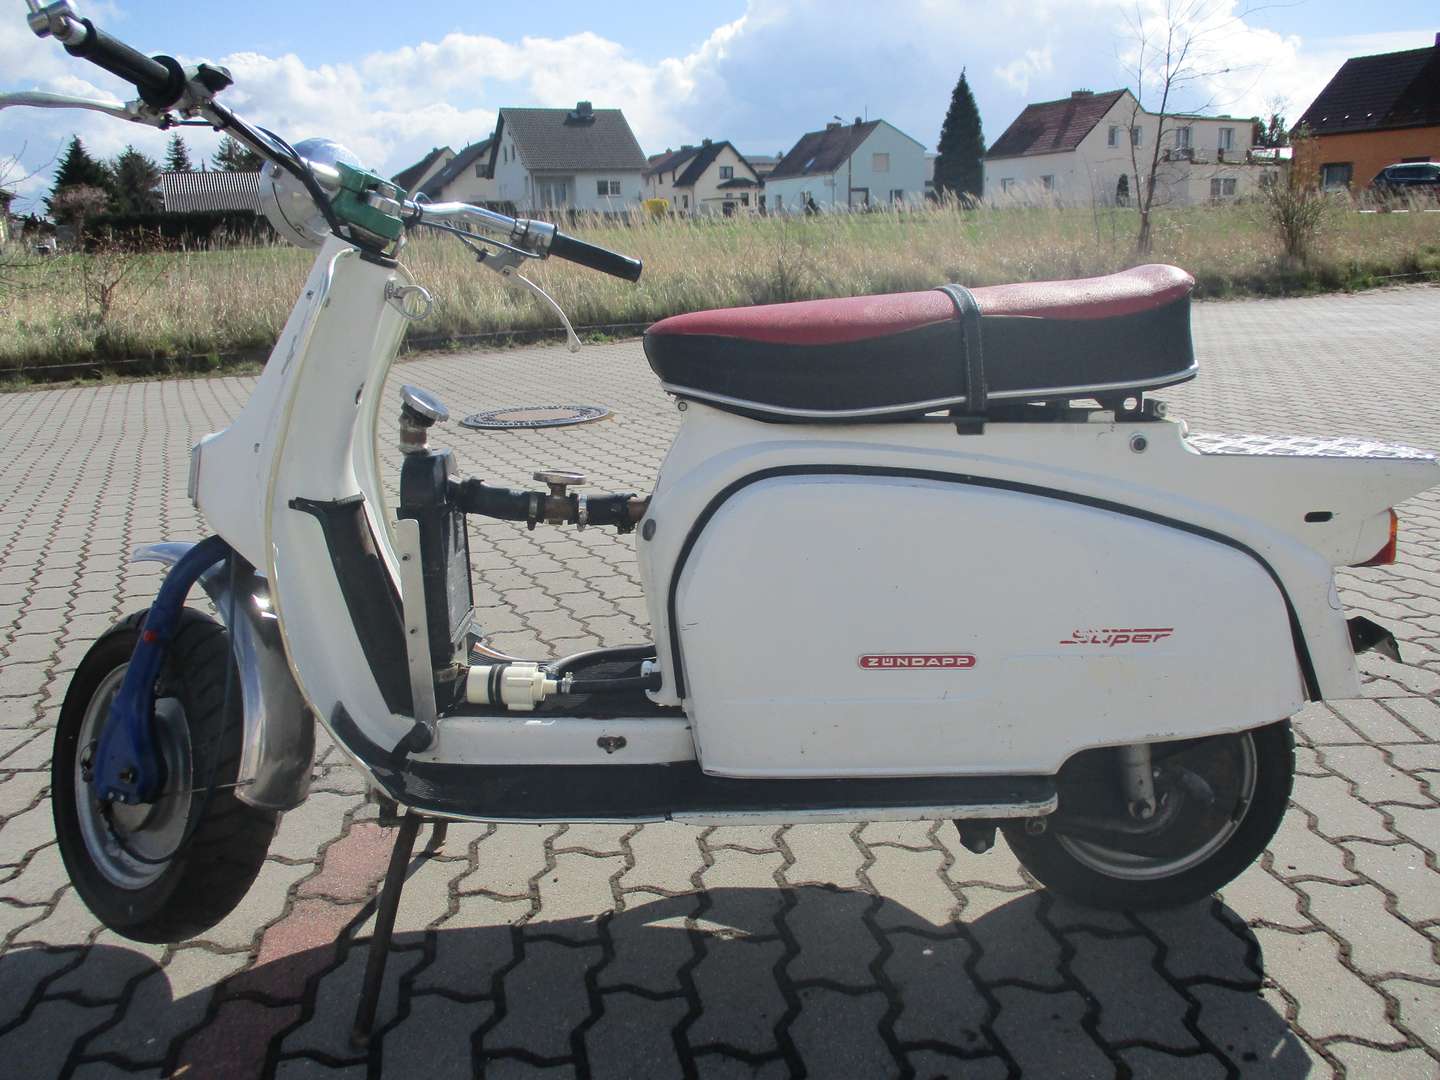 Zündapp R 50 Roller/Scooter in Weiß gebraucht in Calau für € 1.500,-